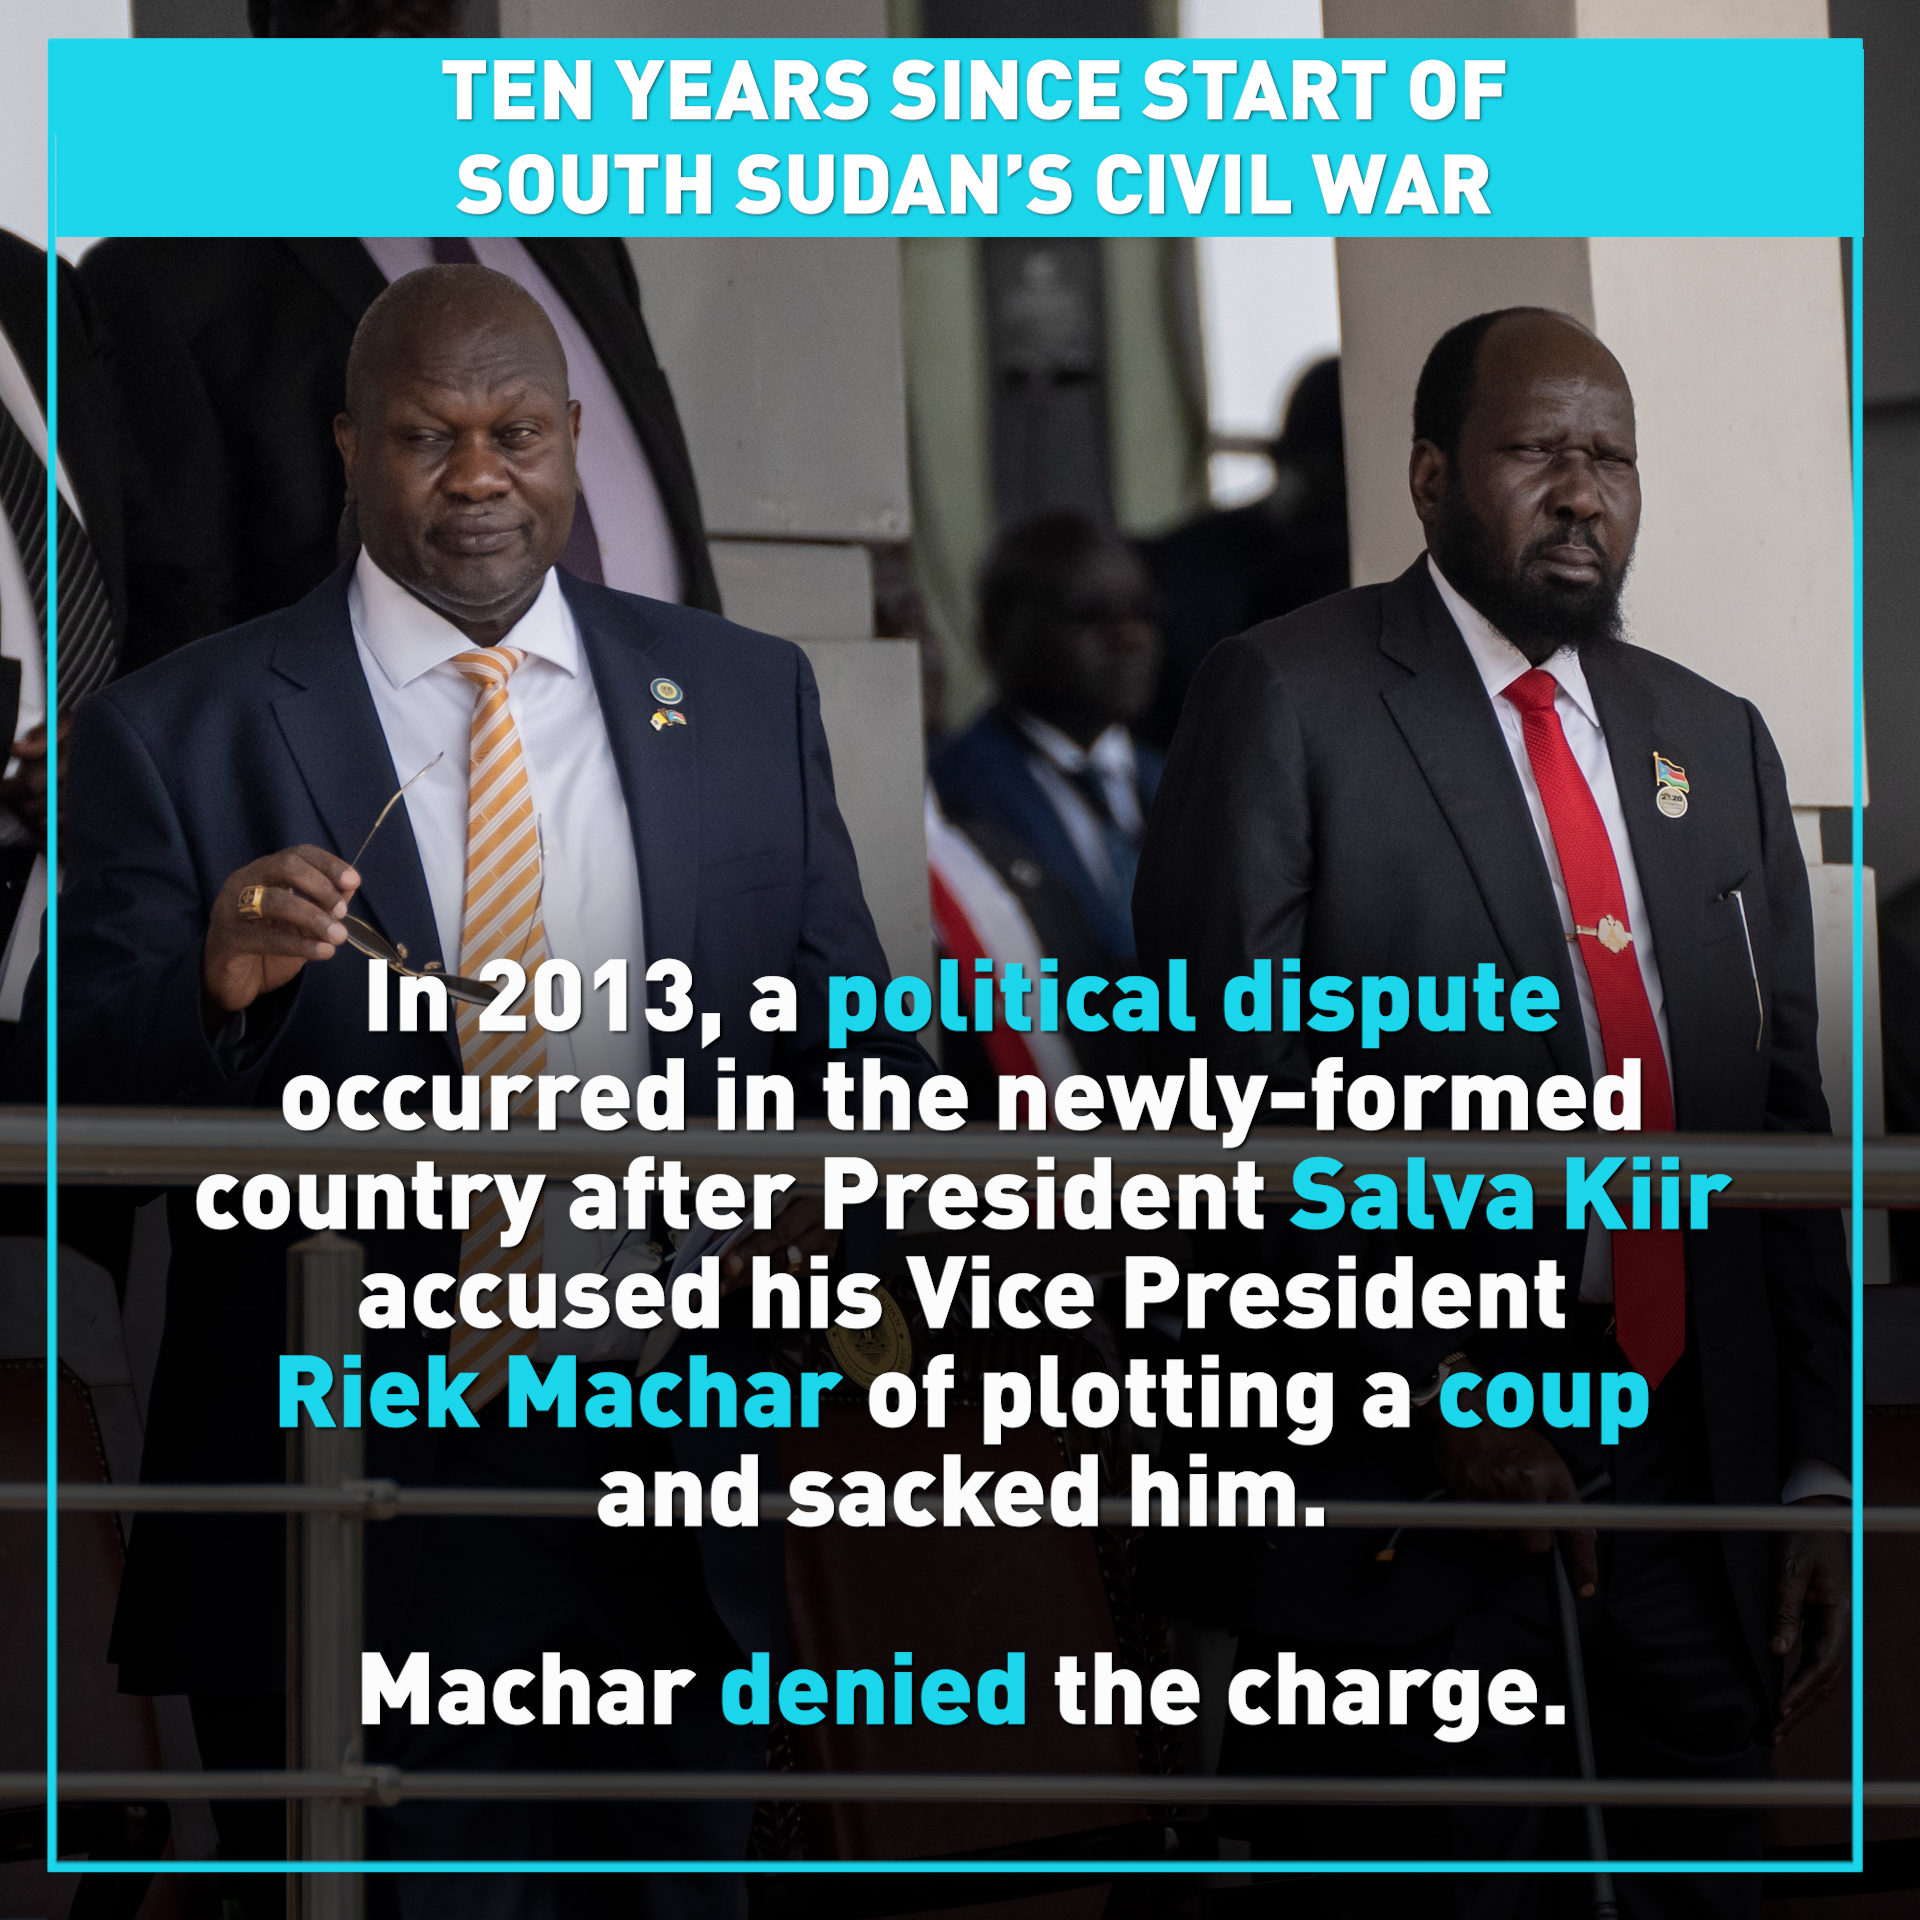 Ten years since civil war broke out in South Sudan